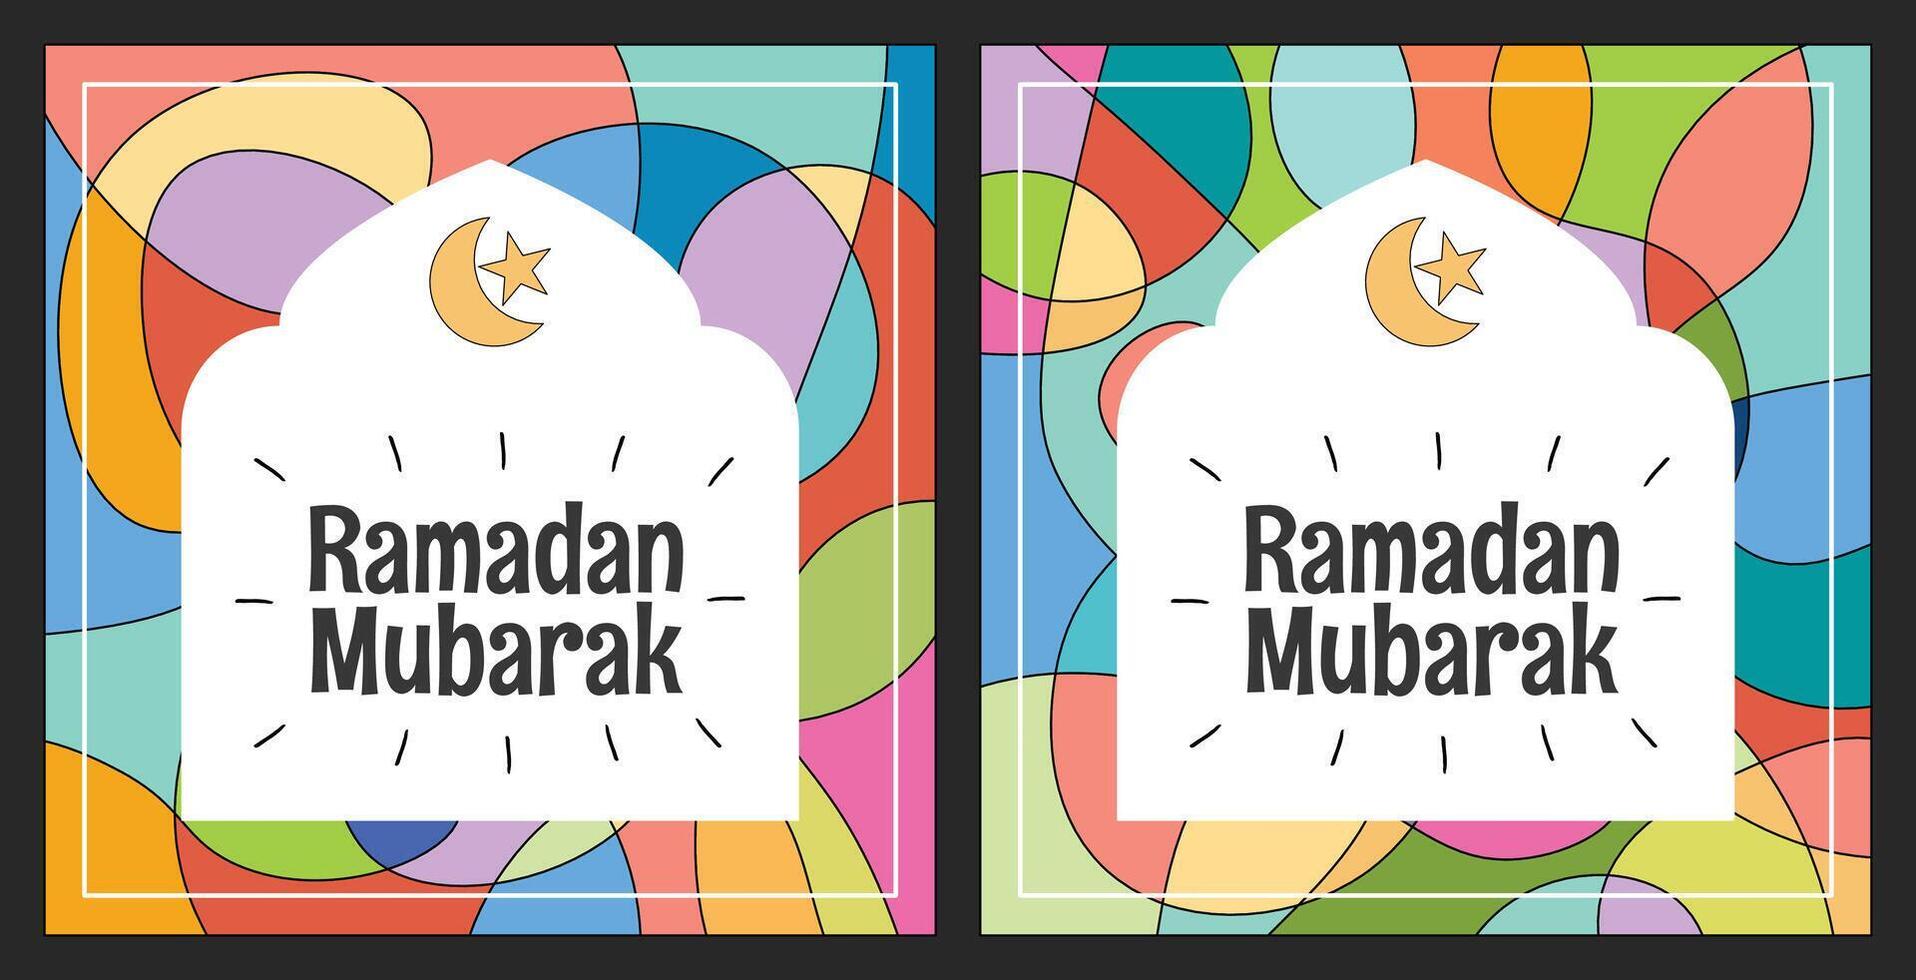 vistoso resumen cuadrado Ramadán para social medios de comunicación, volantes, póster vector